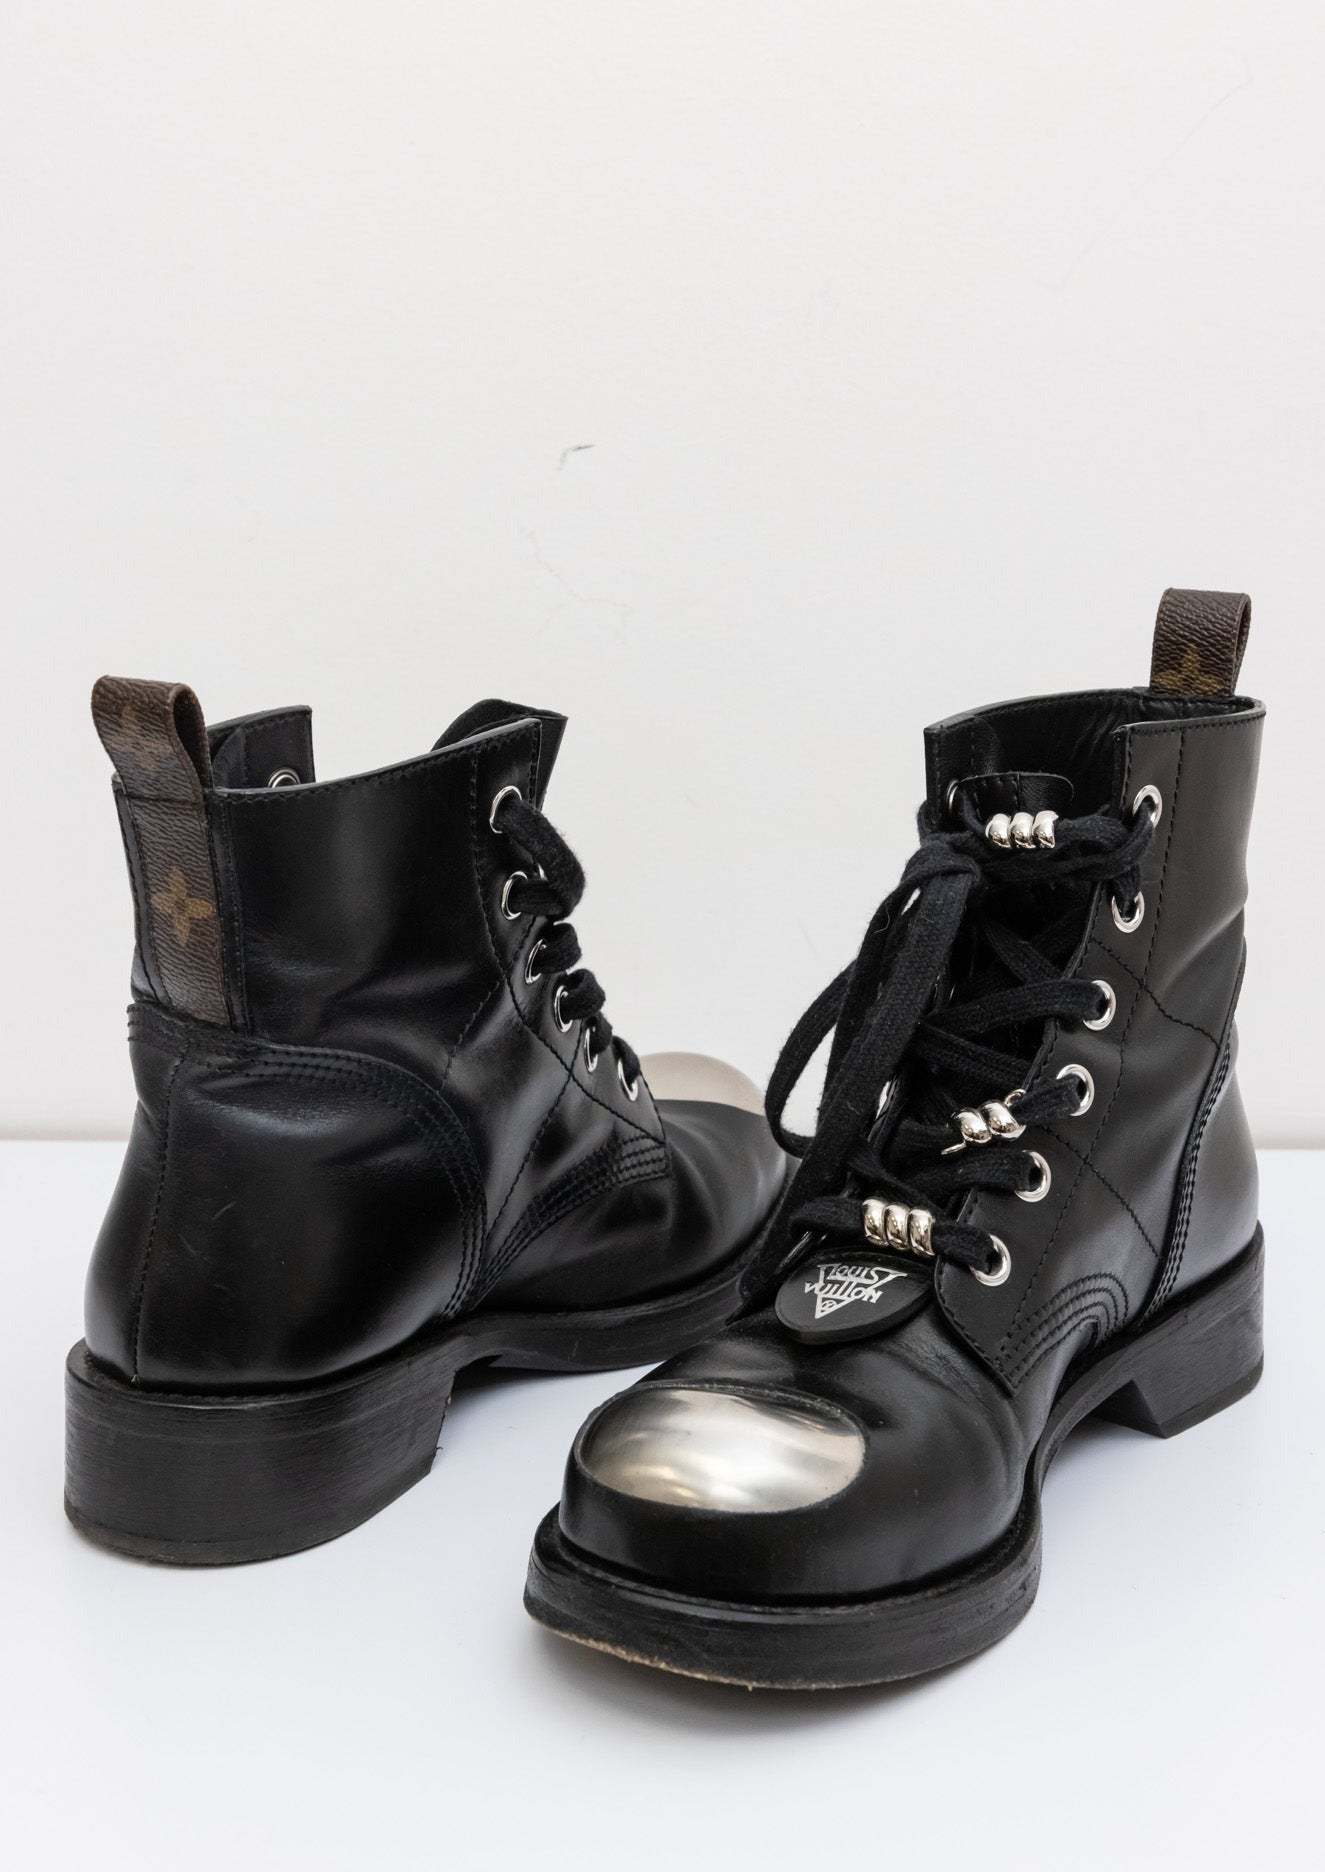 Louis Vuitton Metropolis Shoes Monogram Canvas | Black Leather Ankle Boots | Size 38